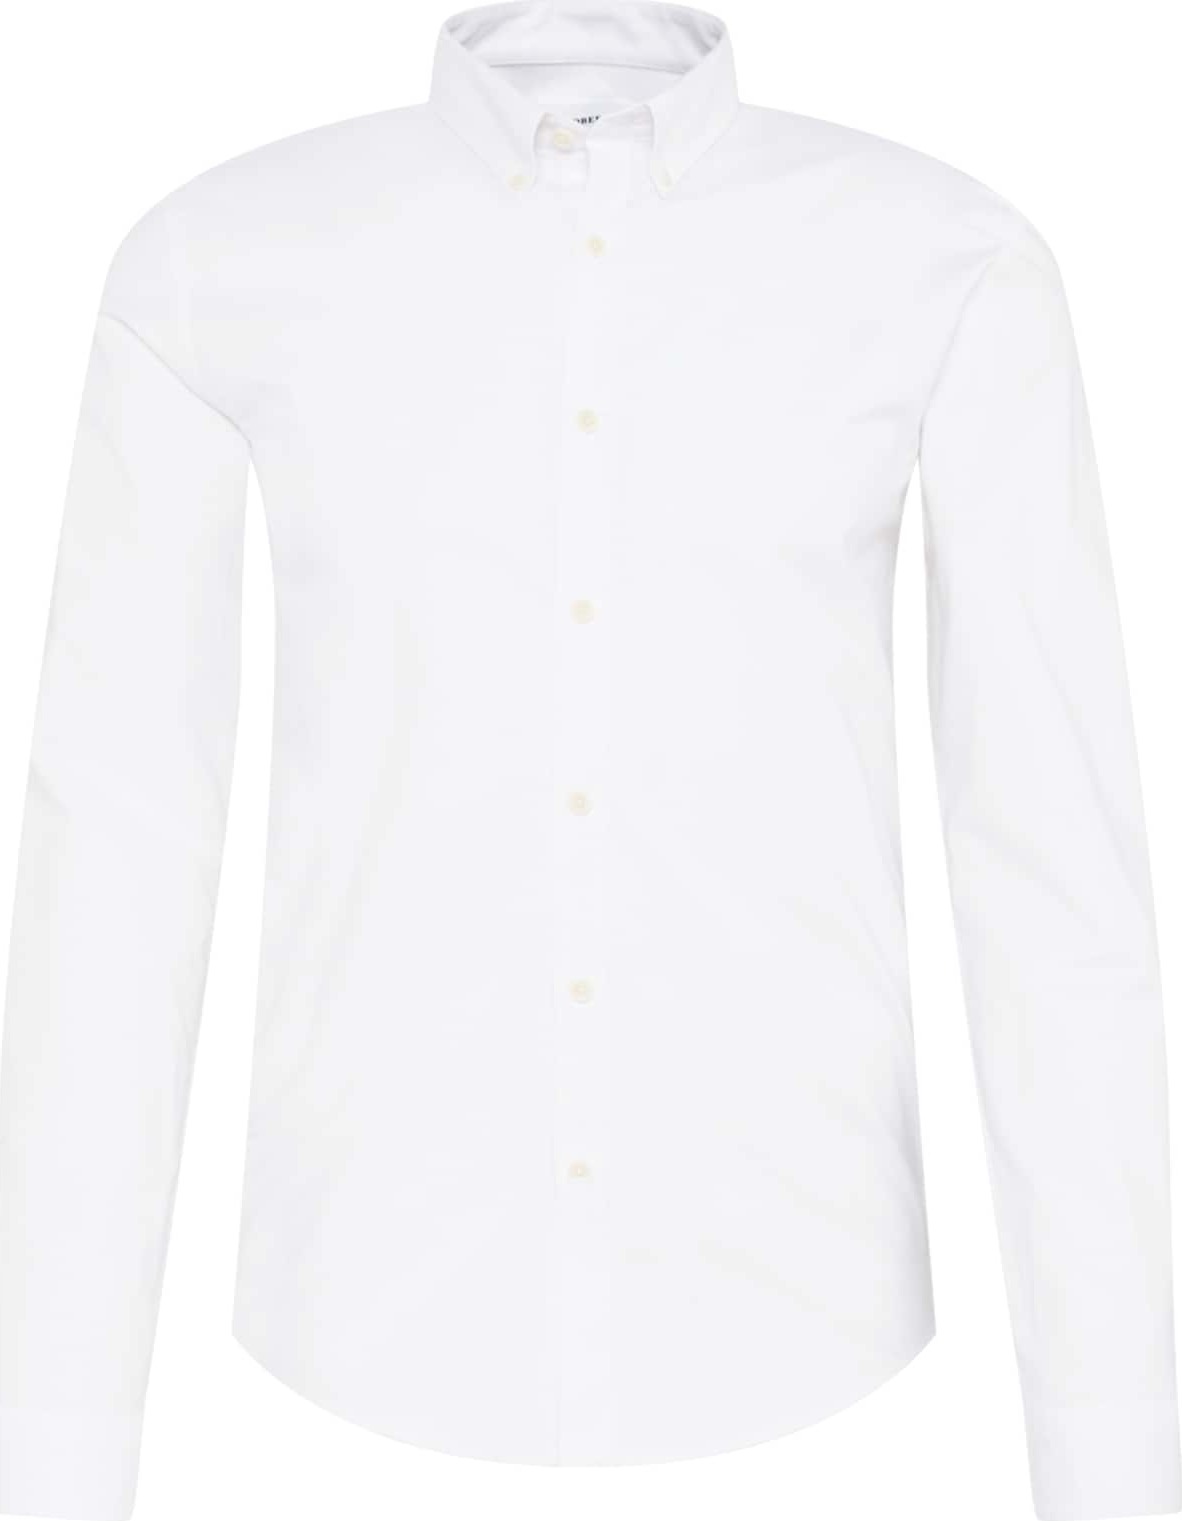 Košile lindbergh bílá